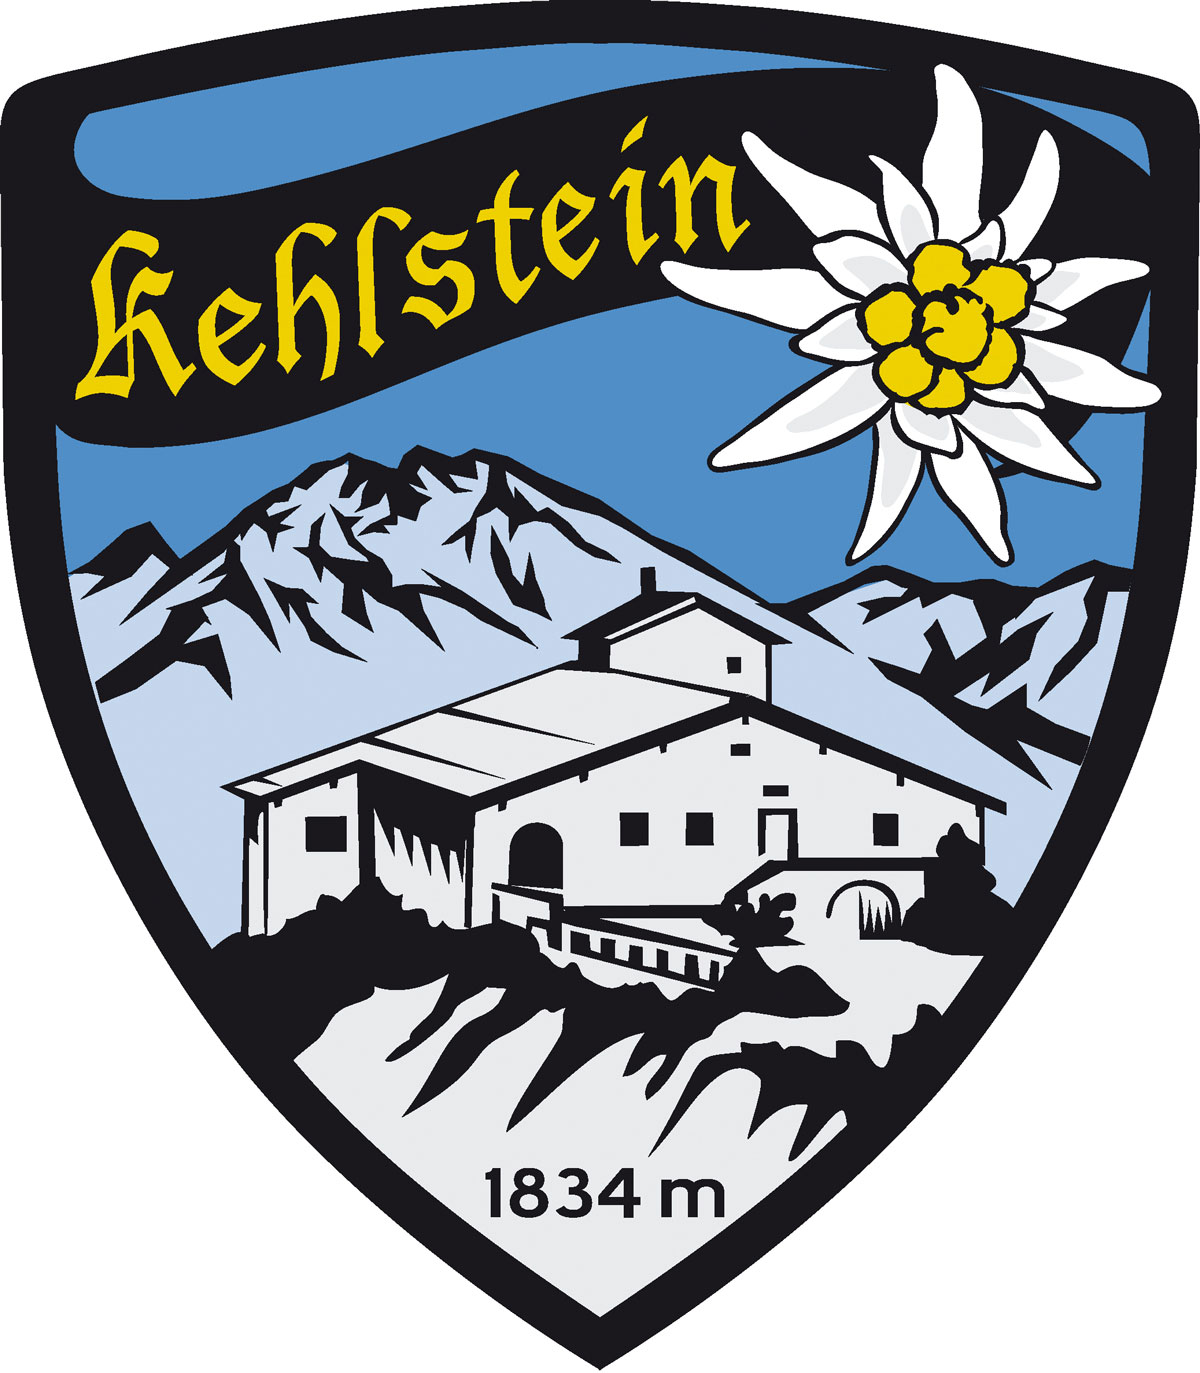 Wappen Aufkleber Sticker Kehlstein - Kehlsteinhaus - Eagles Nest  - Motiv Edelweiß